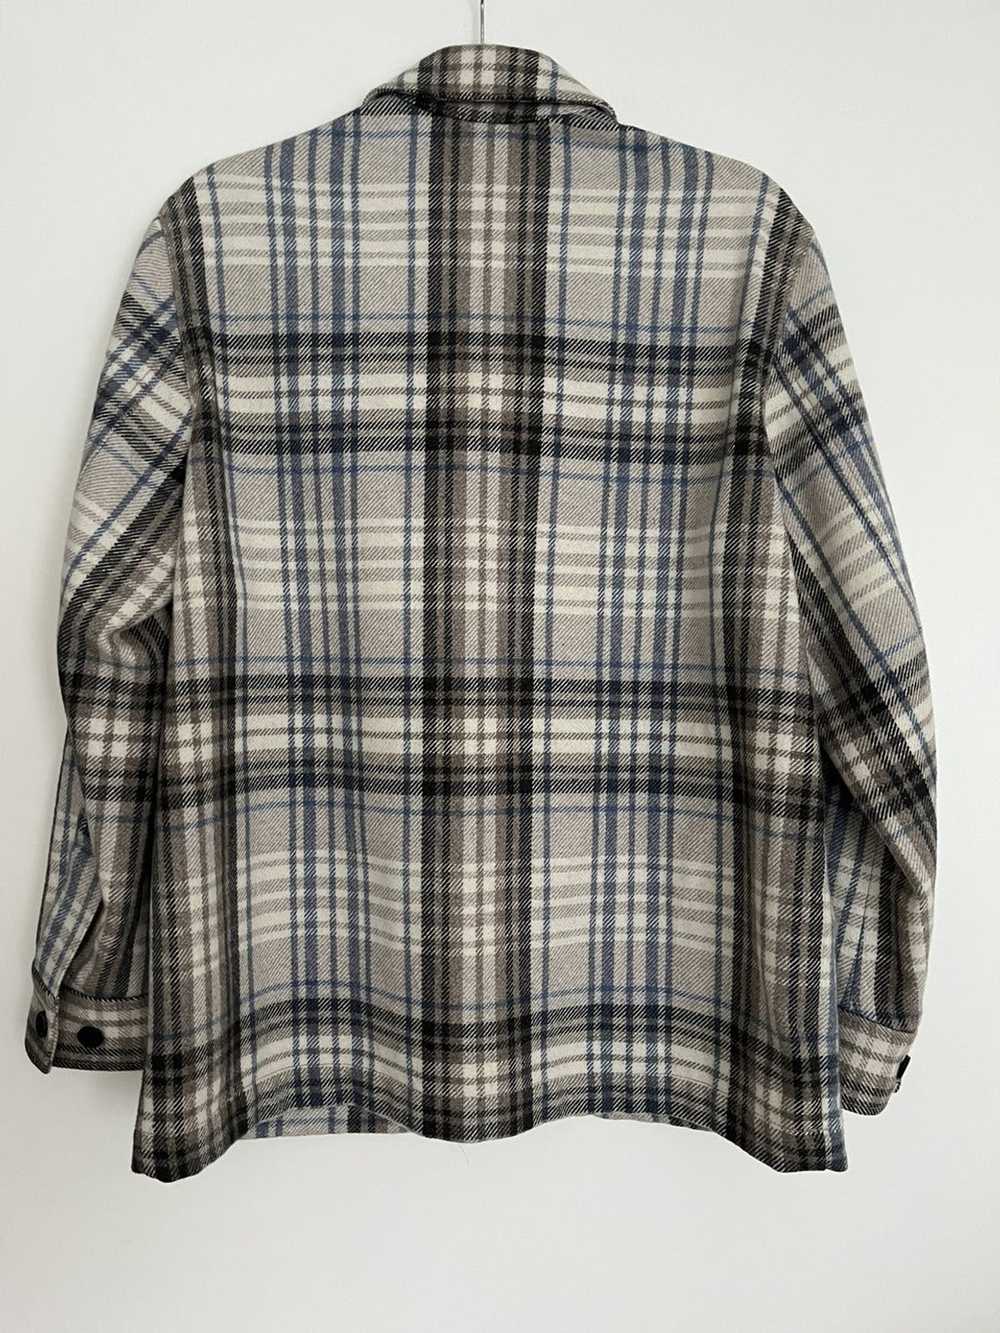 Arket Wool Plaid Overshirt 46 - image 4